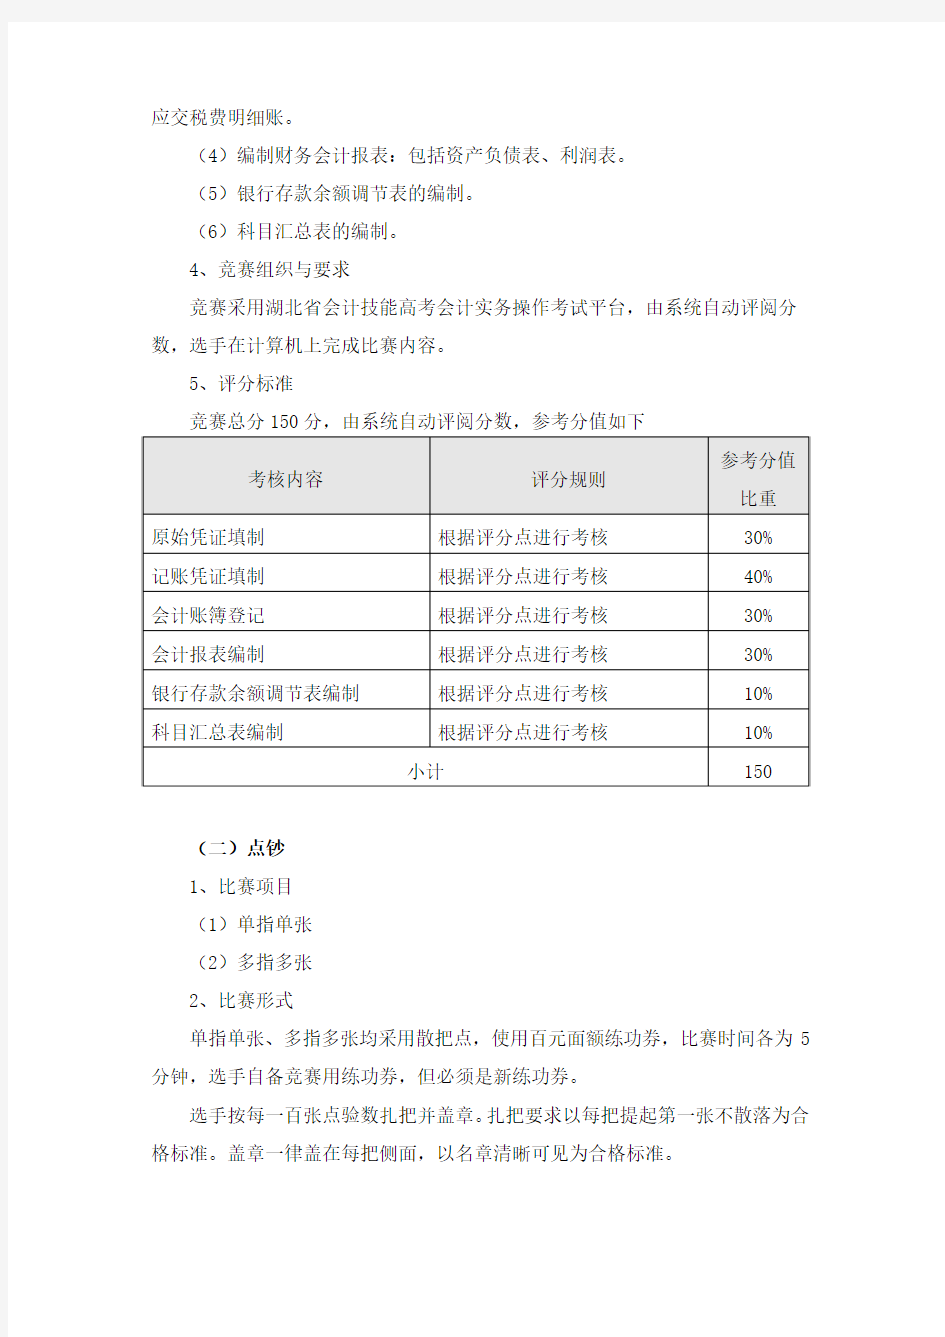 (会计技能)2015年湖北省职业院校技能大赛竞赛方案8.26)